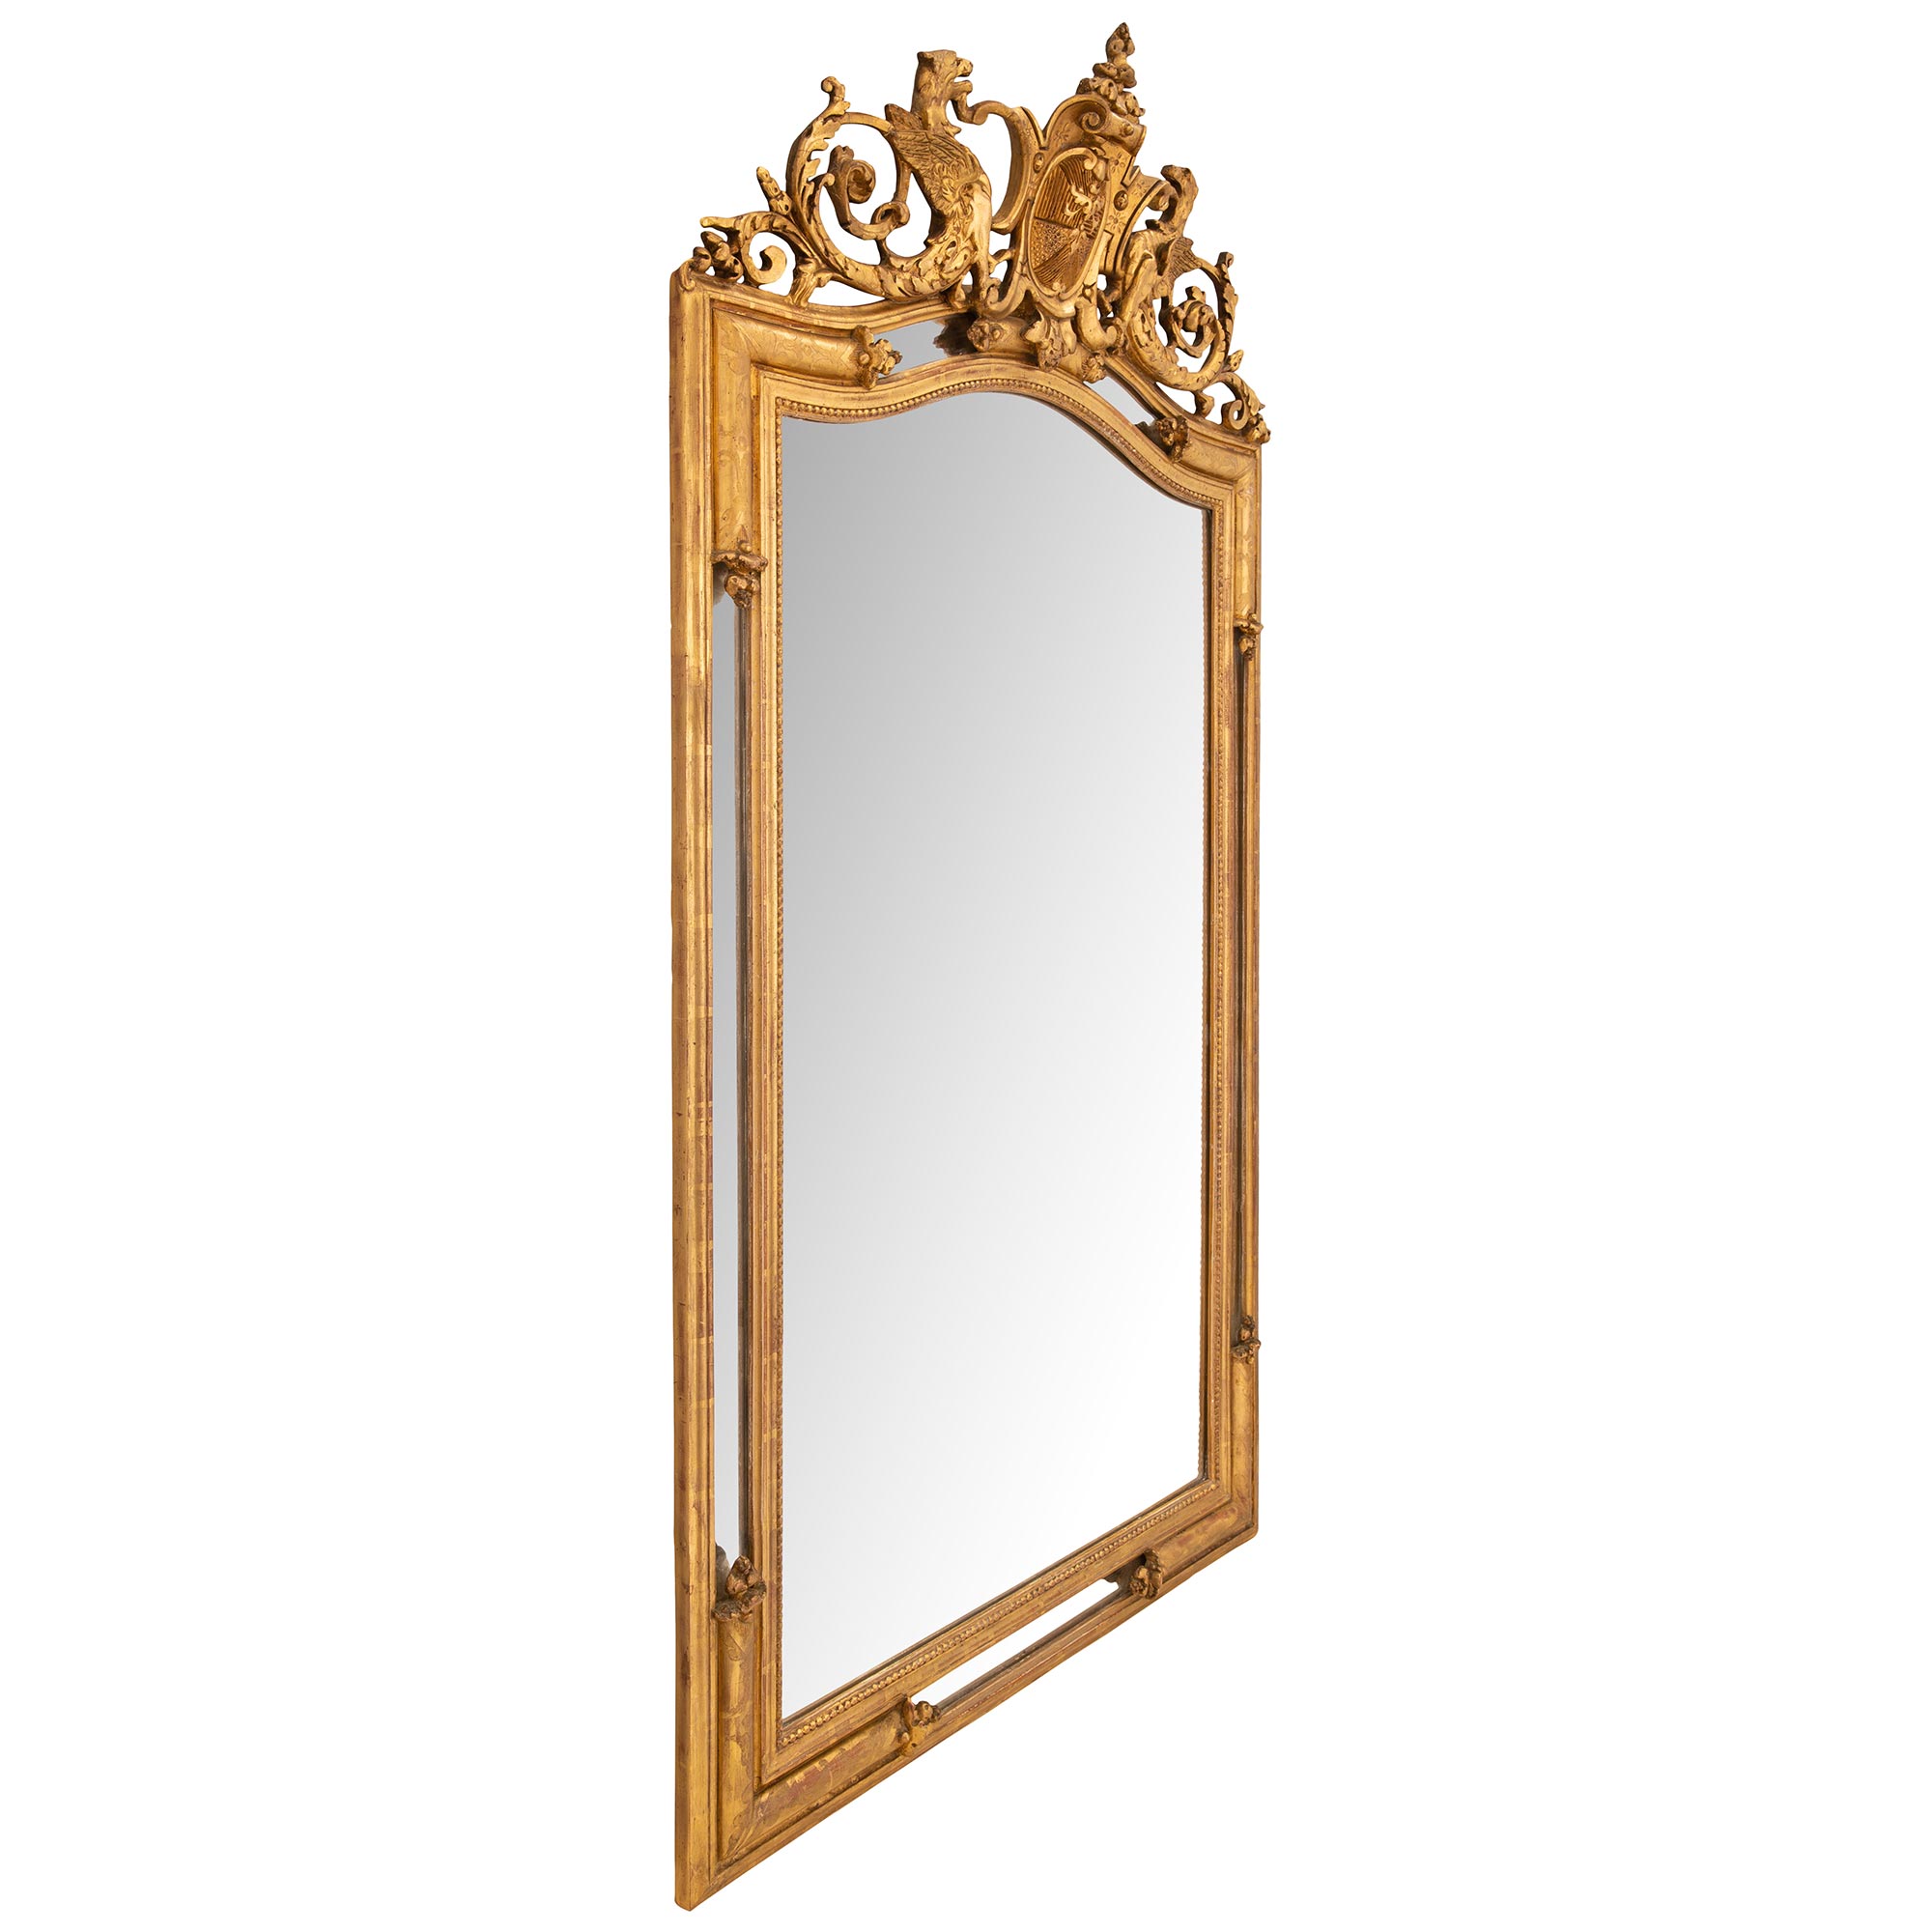 Rome Oval framed mirror - Antique Gold Leaf